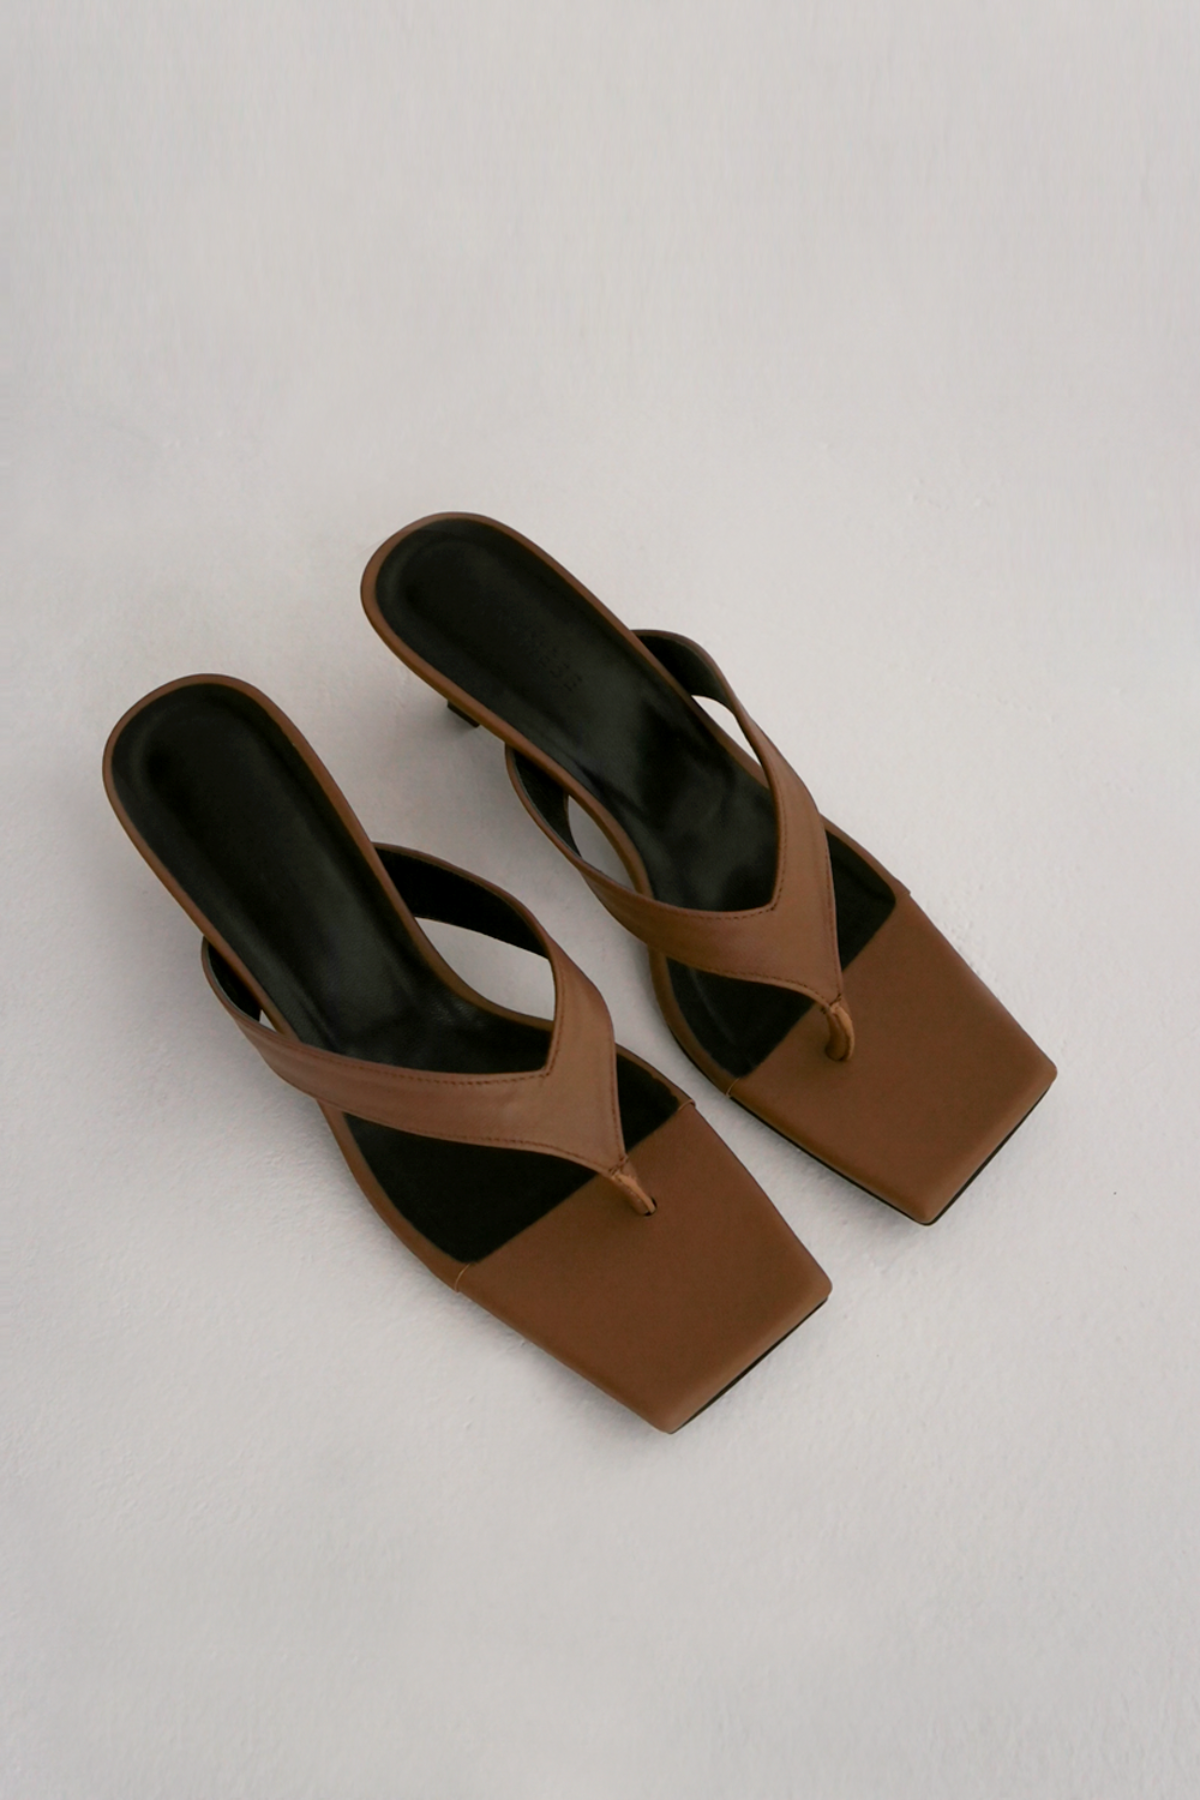 ANTHÈSE Liliane flip-flop sandal heel, camel